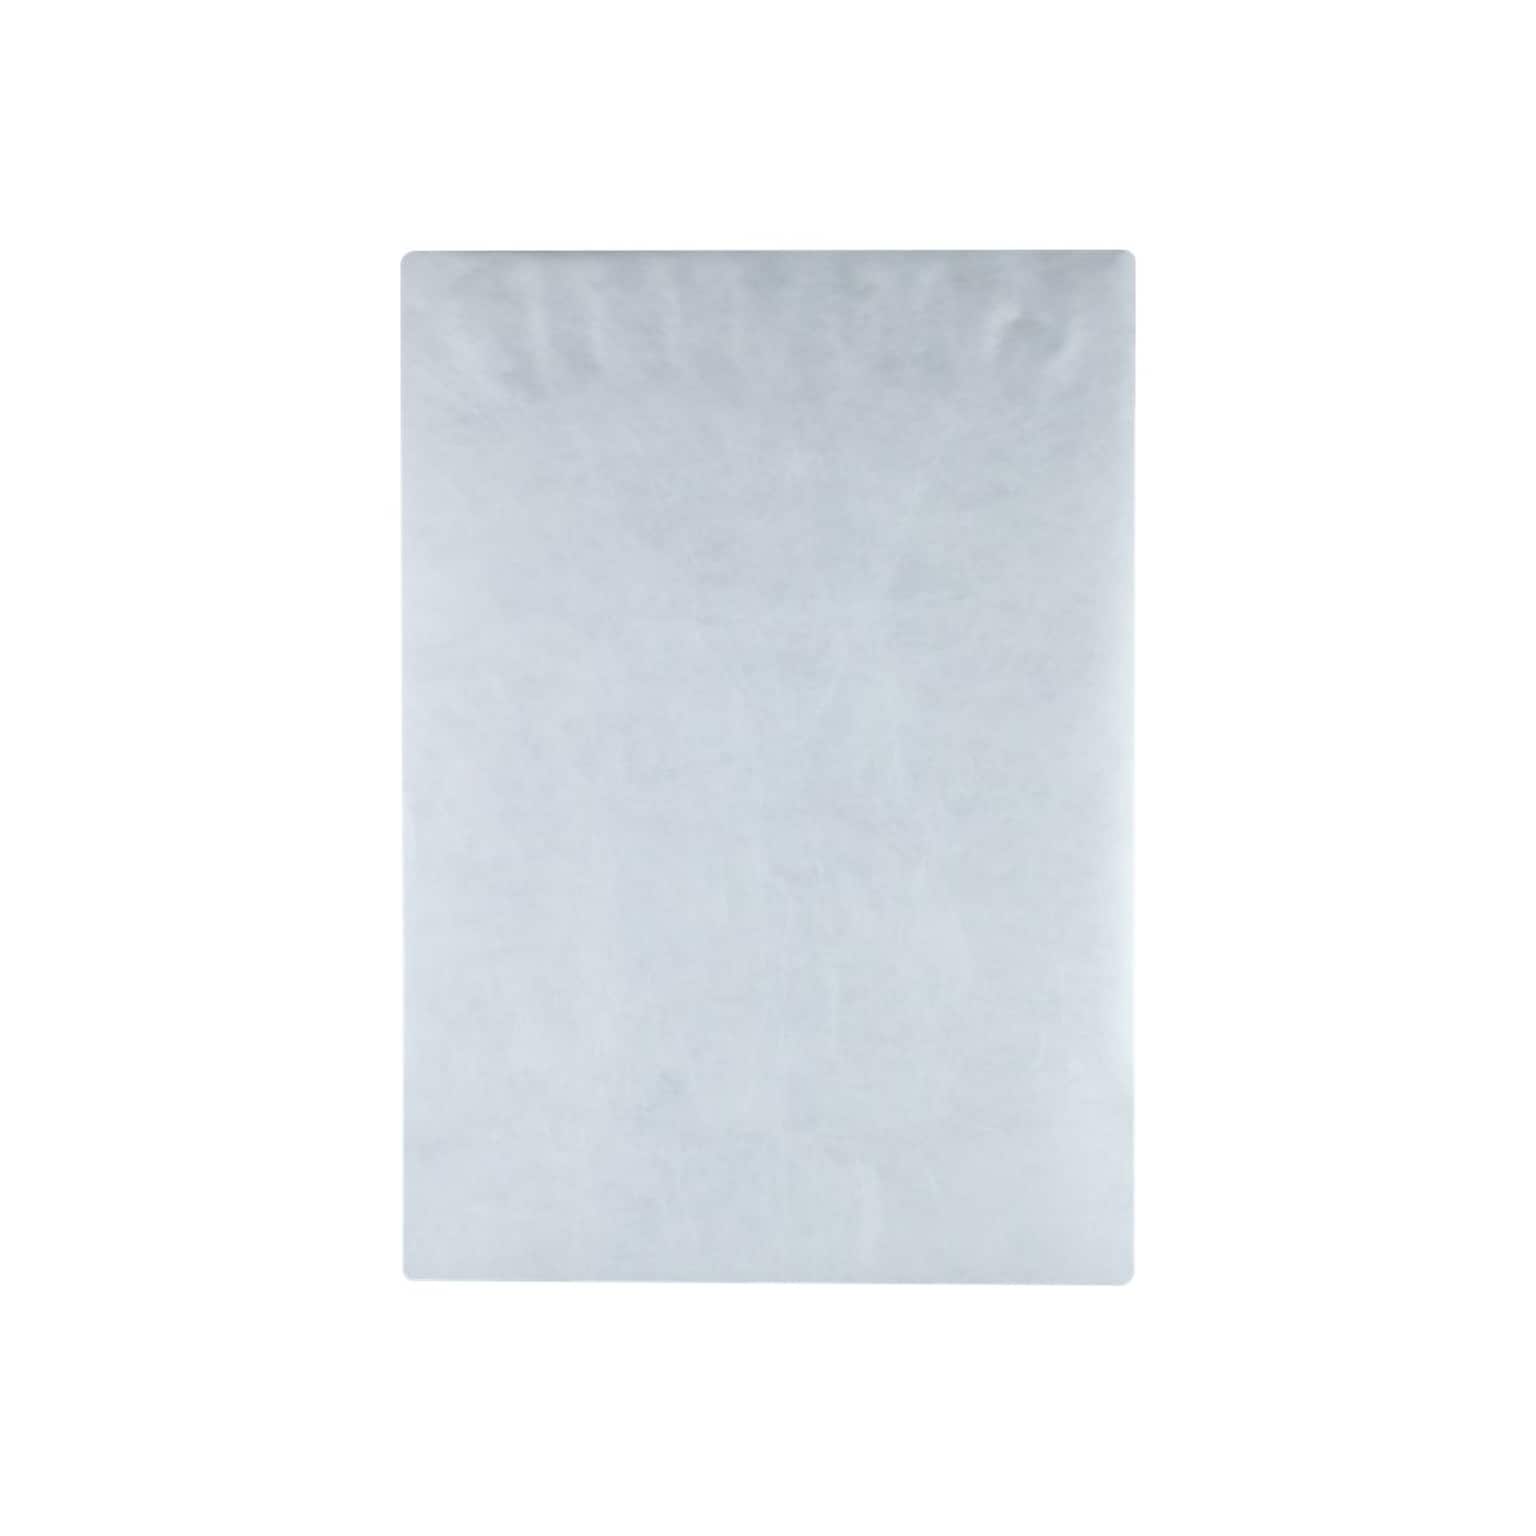 Quality Park Survivor Self Seal Catalog Envelopes, 13 x 19, White, 25/Box (QUAR5101)